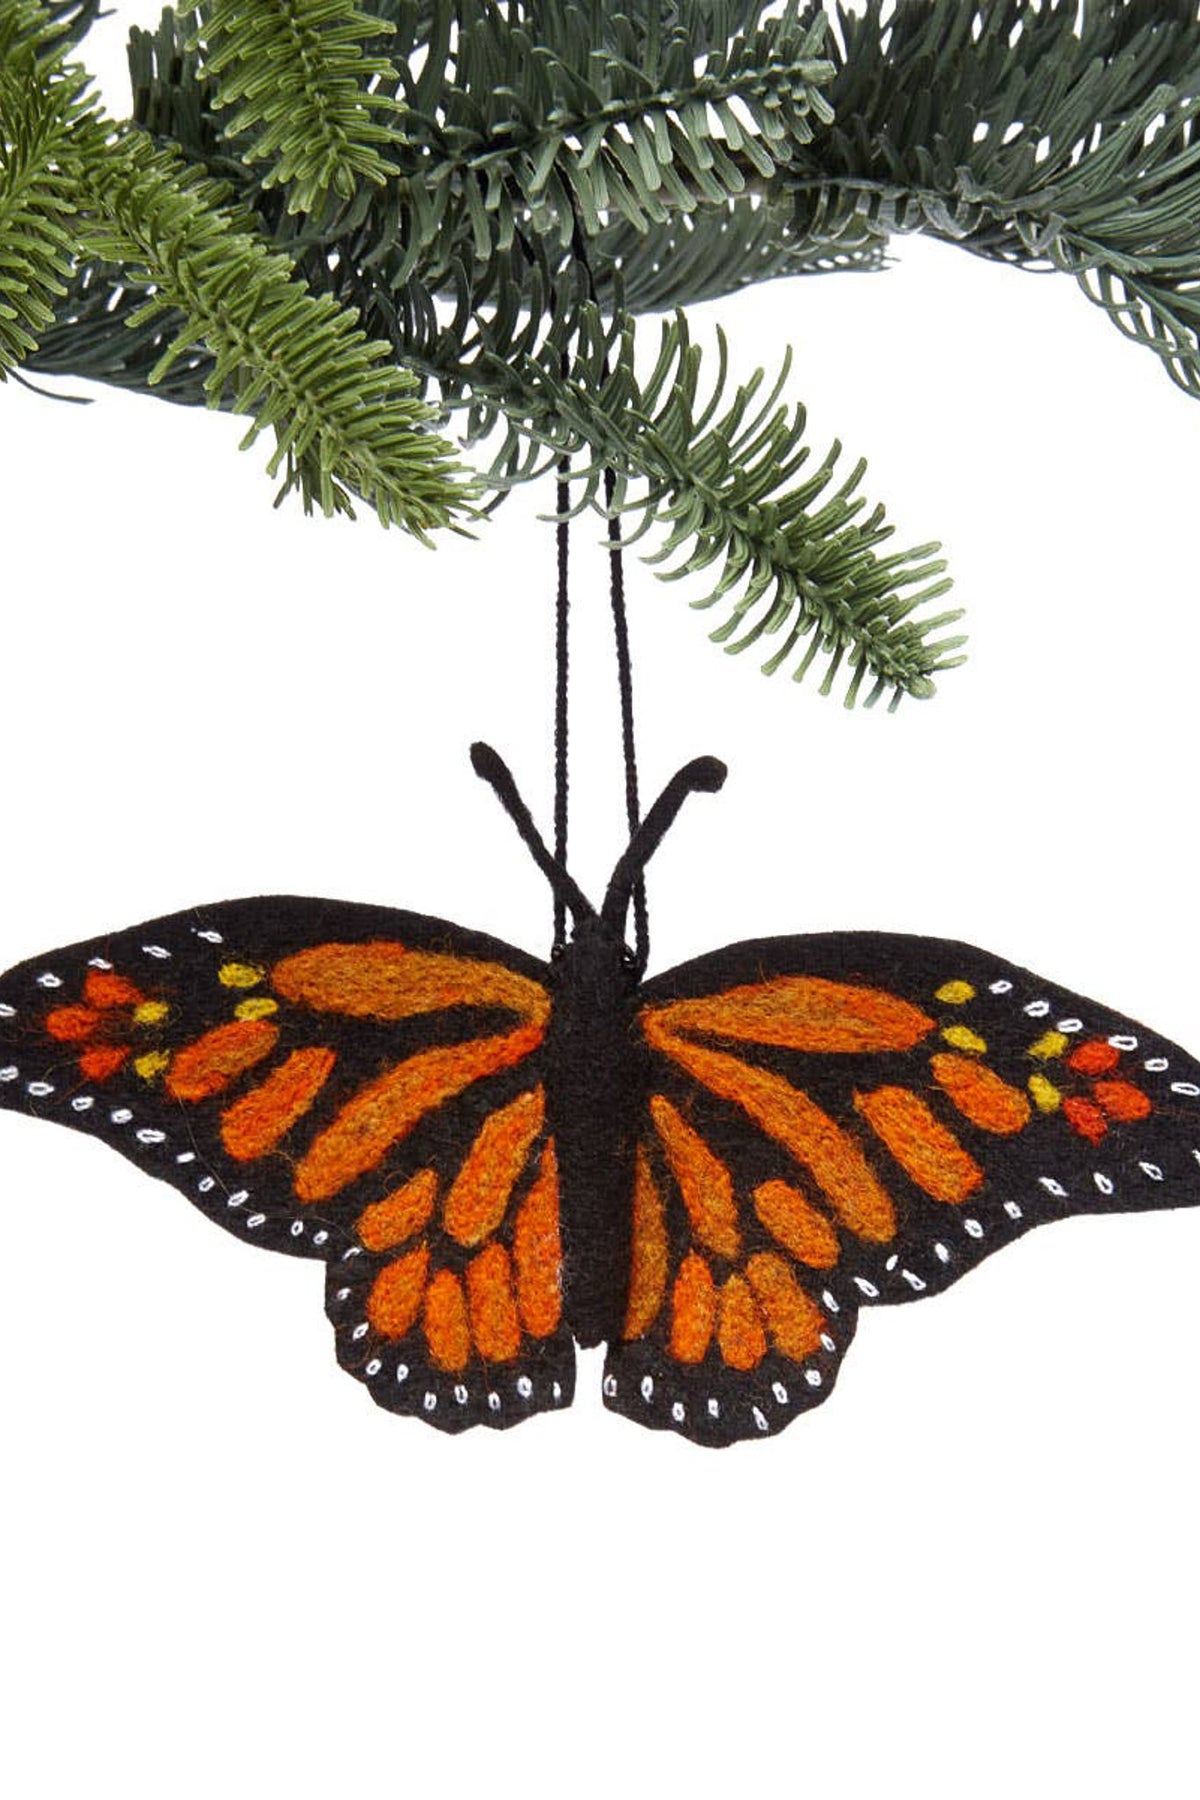 Silk Road Bazaar Monarch Butterfly Ornament